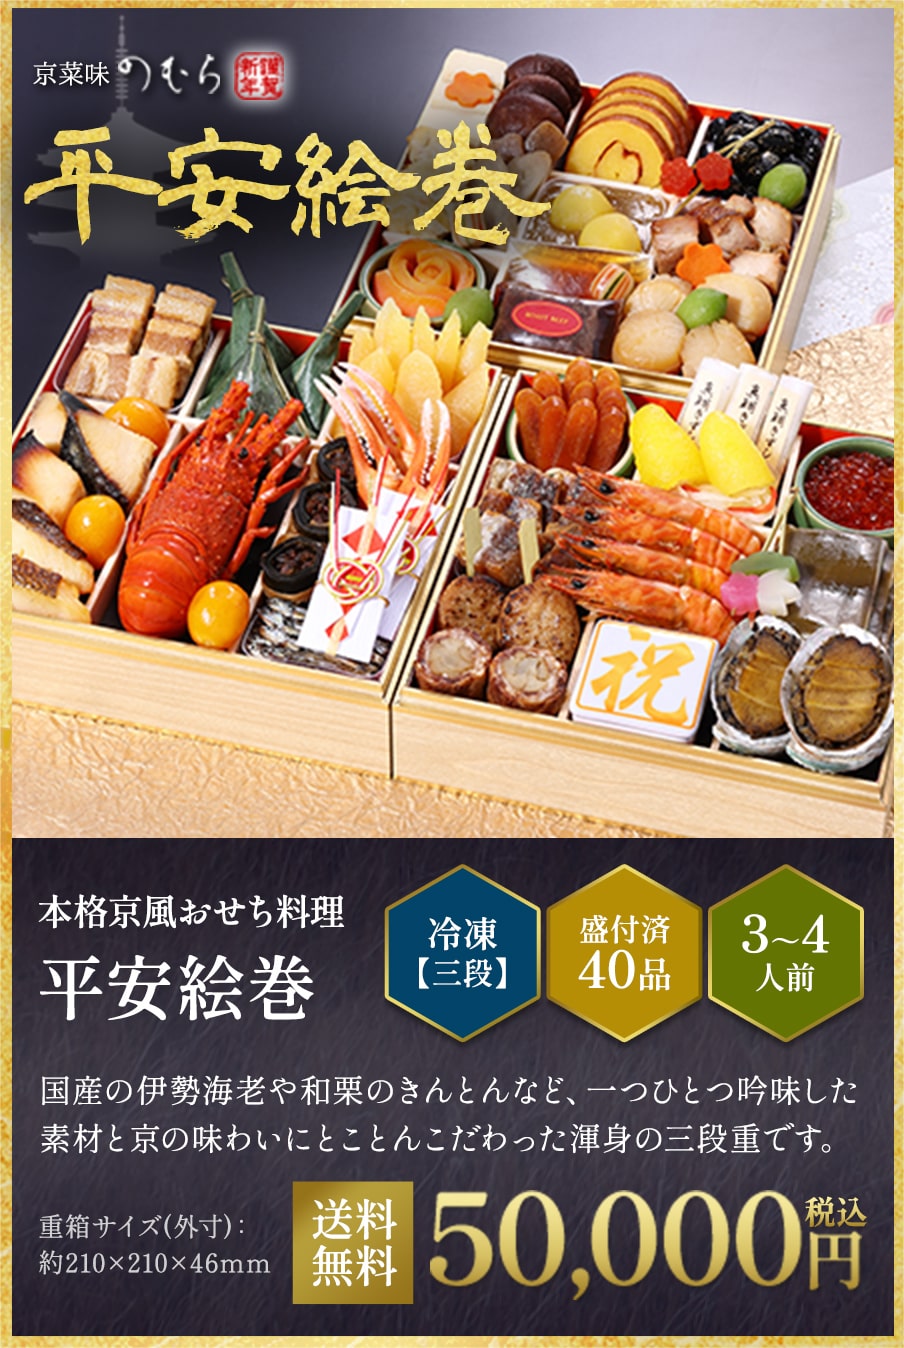 本格京風おせち料理「平安絵巻」冷凍三段 盛付済み40品 3~4人前 50,000円